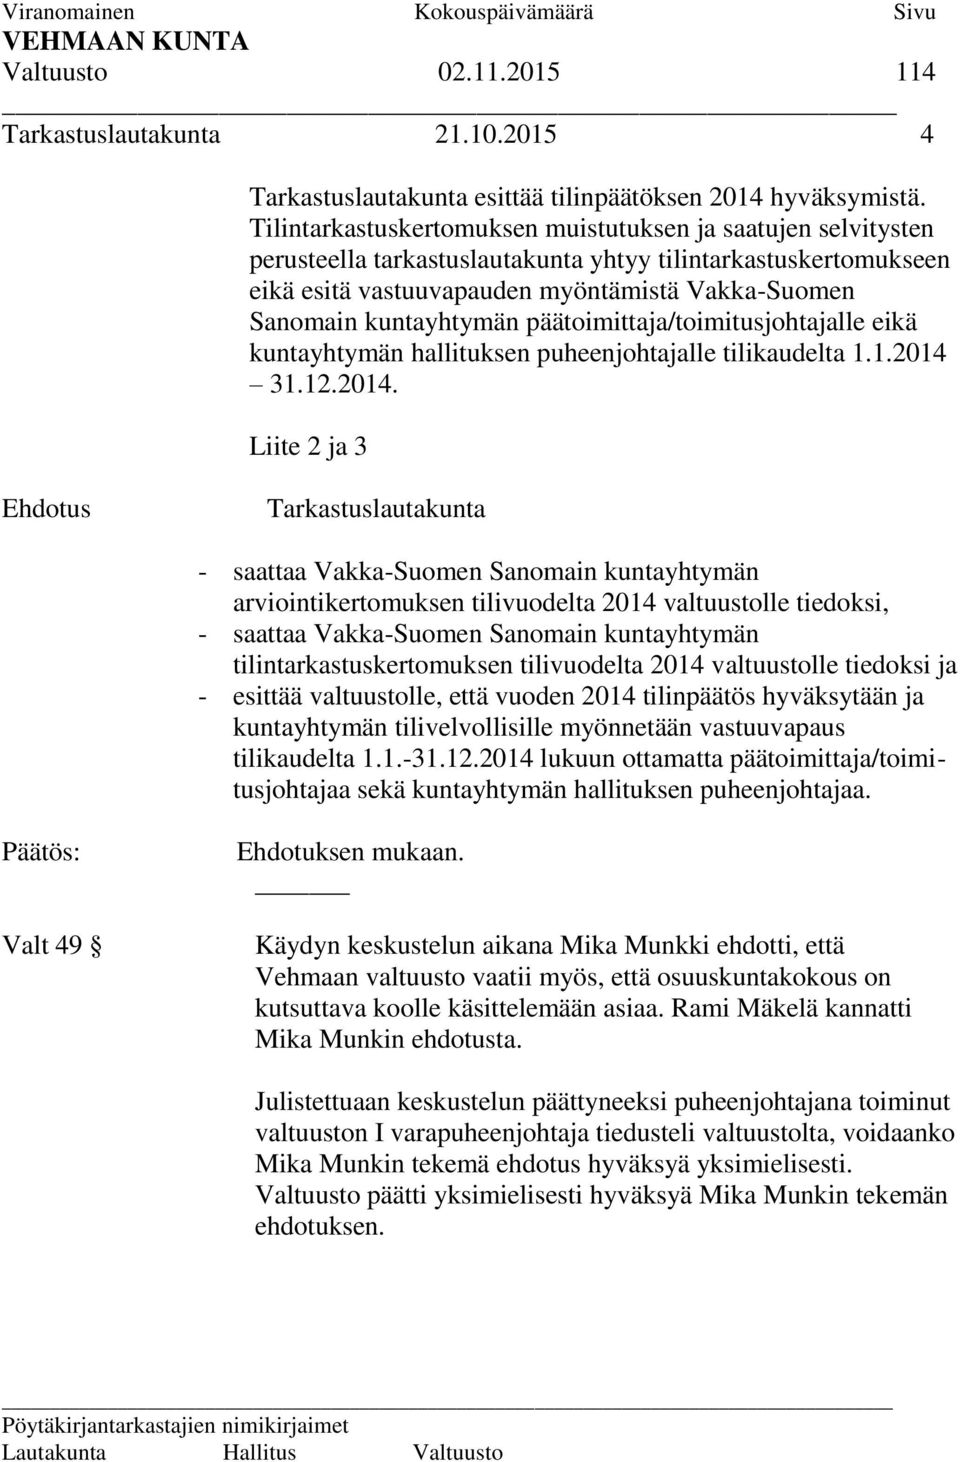 kuntayhtymän päätoimittaja/toimitusjohtajalle eikä kuntayhtymän hallituksen puheenjohtajalle tilikaudelta 1.1.2014 